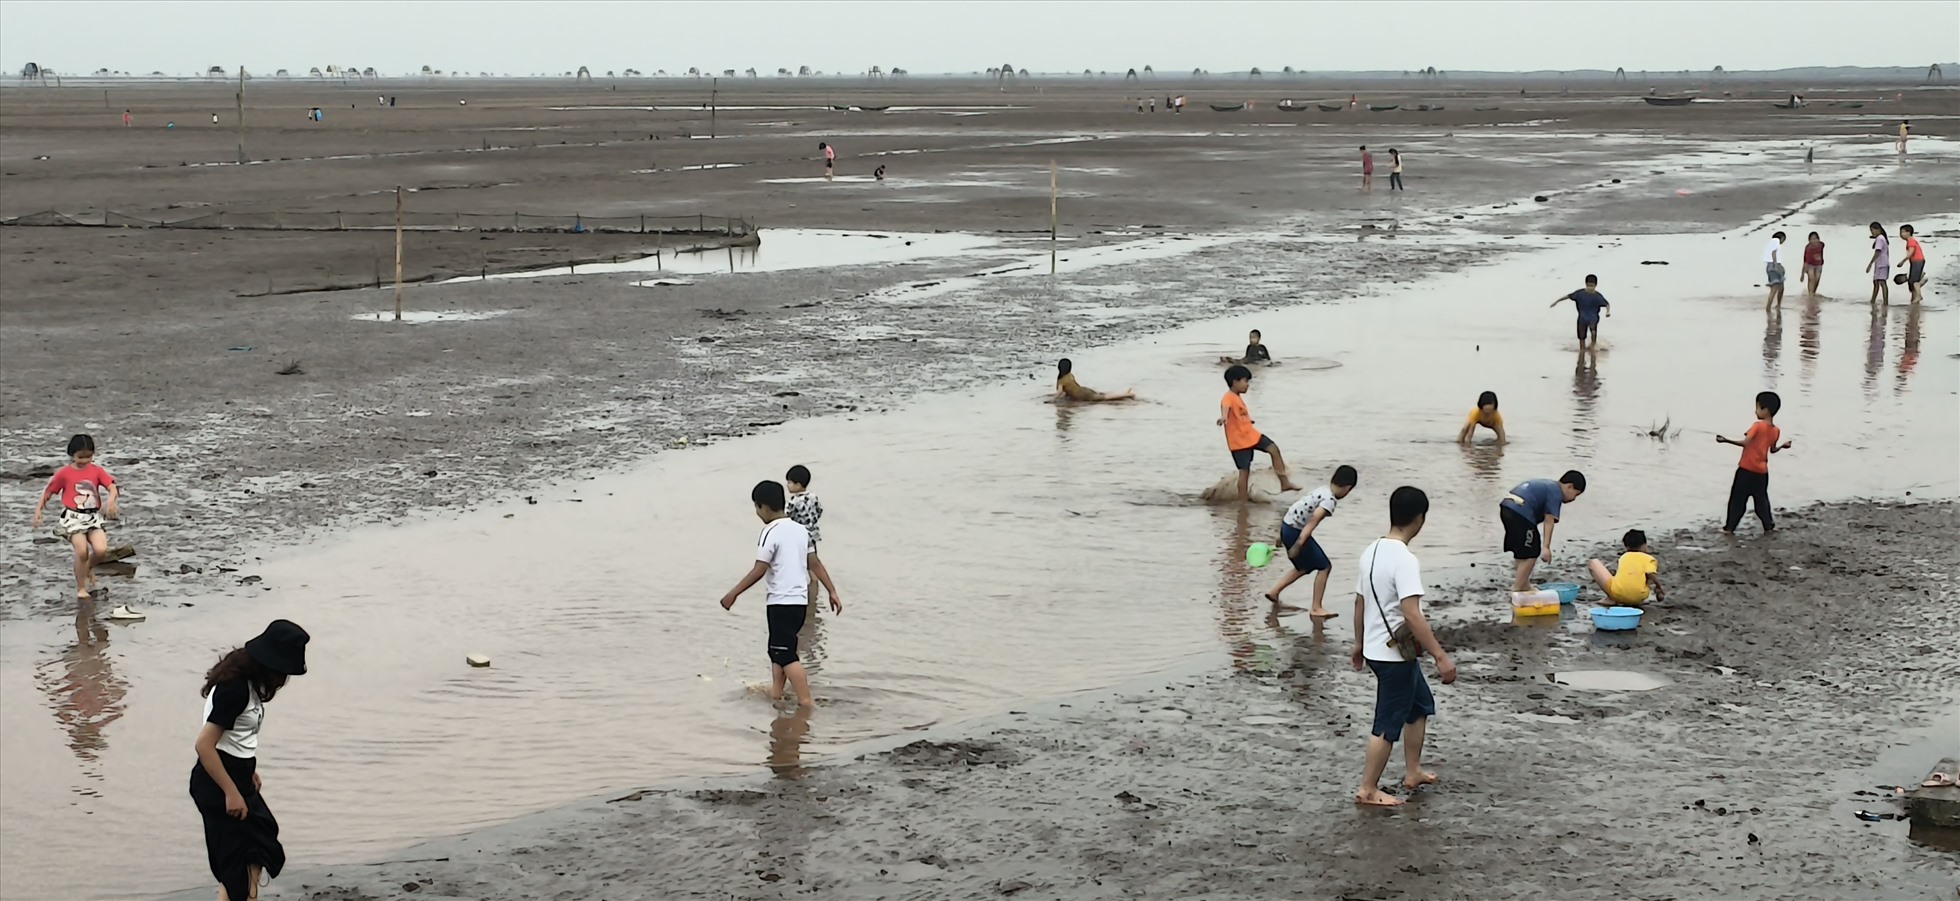 Cùng với bãi biển Cồn Vành, bãi biển Đồng Châu cũng rất hút khách dịp nghỉ lễ năm nay. Ảnh: Bá Dương